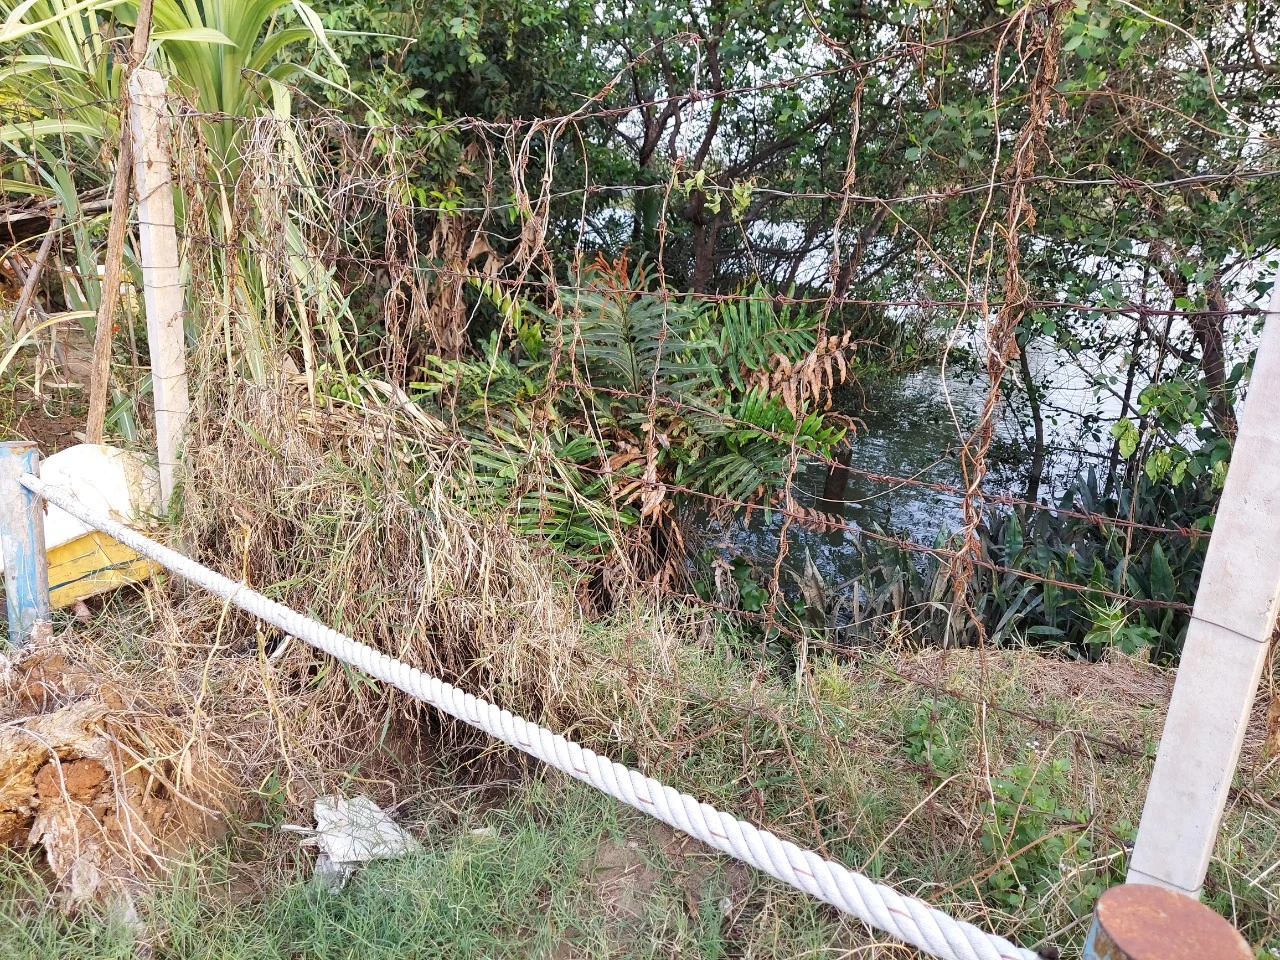 2.Nước thải sinh hoạt Khu dân cư Melosa Garden được xả trực tiếp ra sông không qua xử lý?